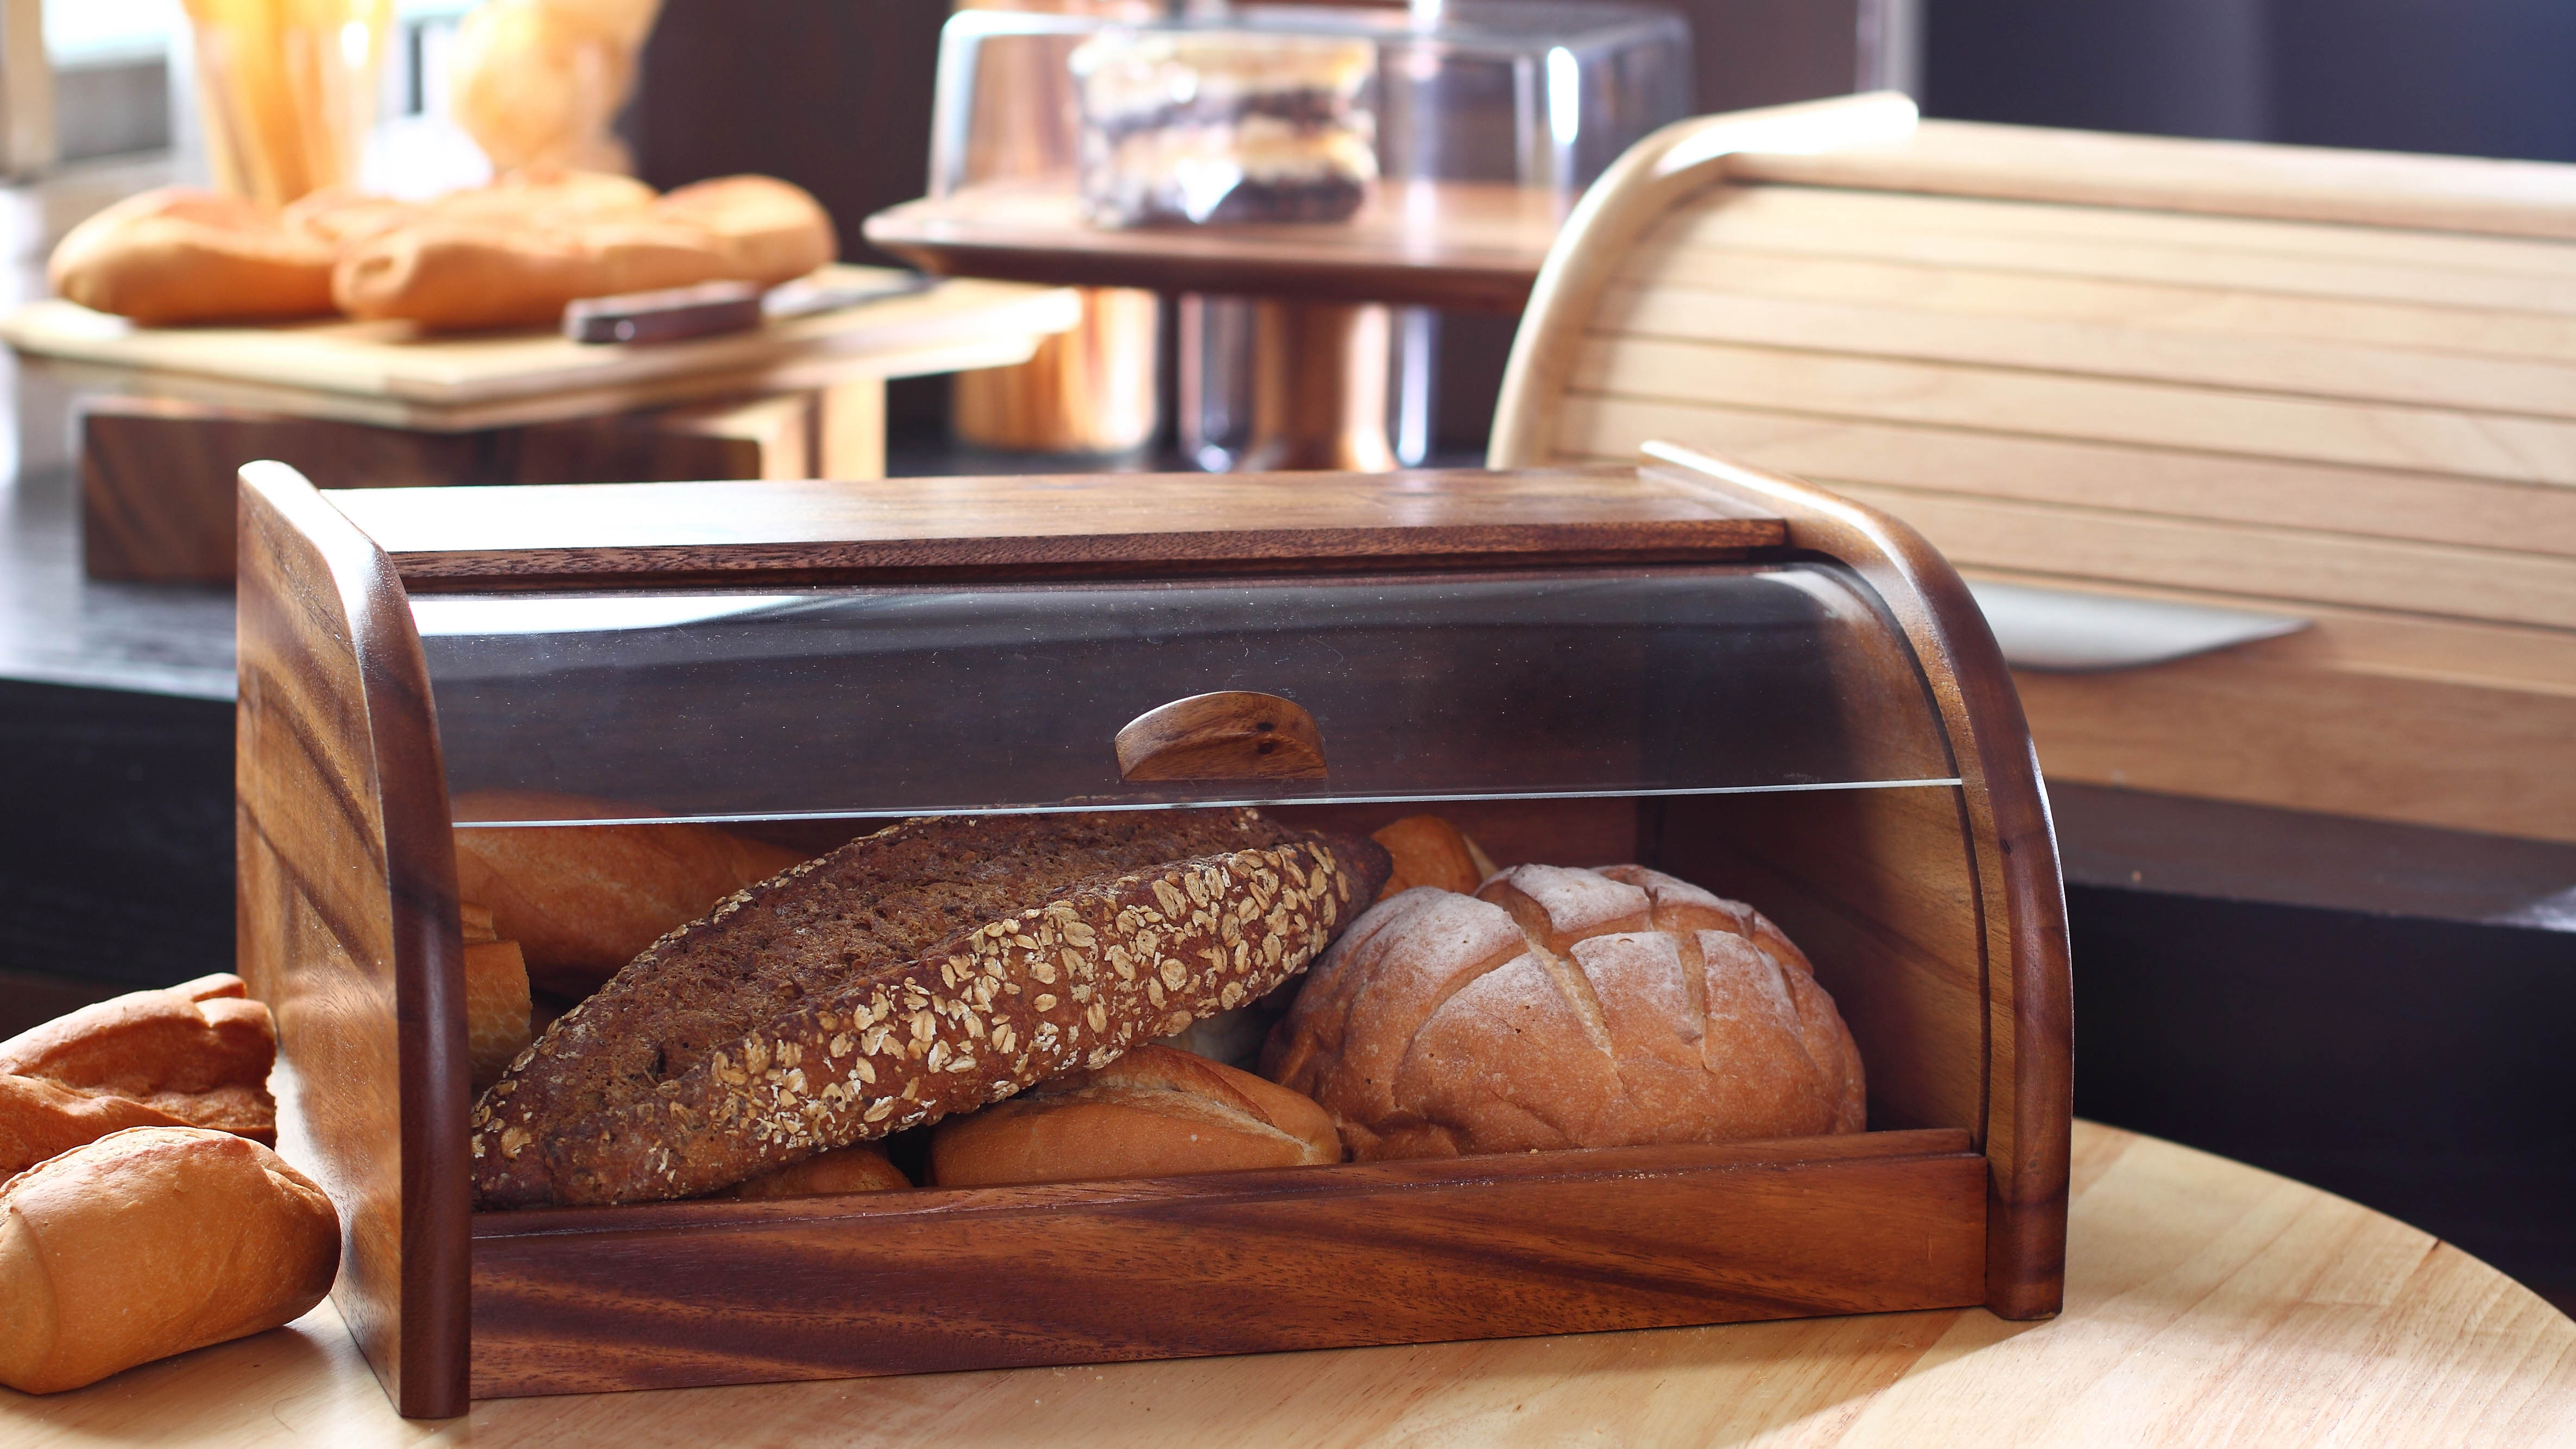 Bread loaves in bread box